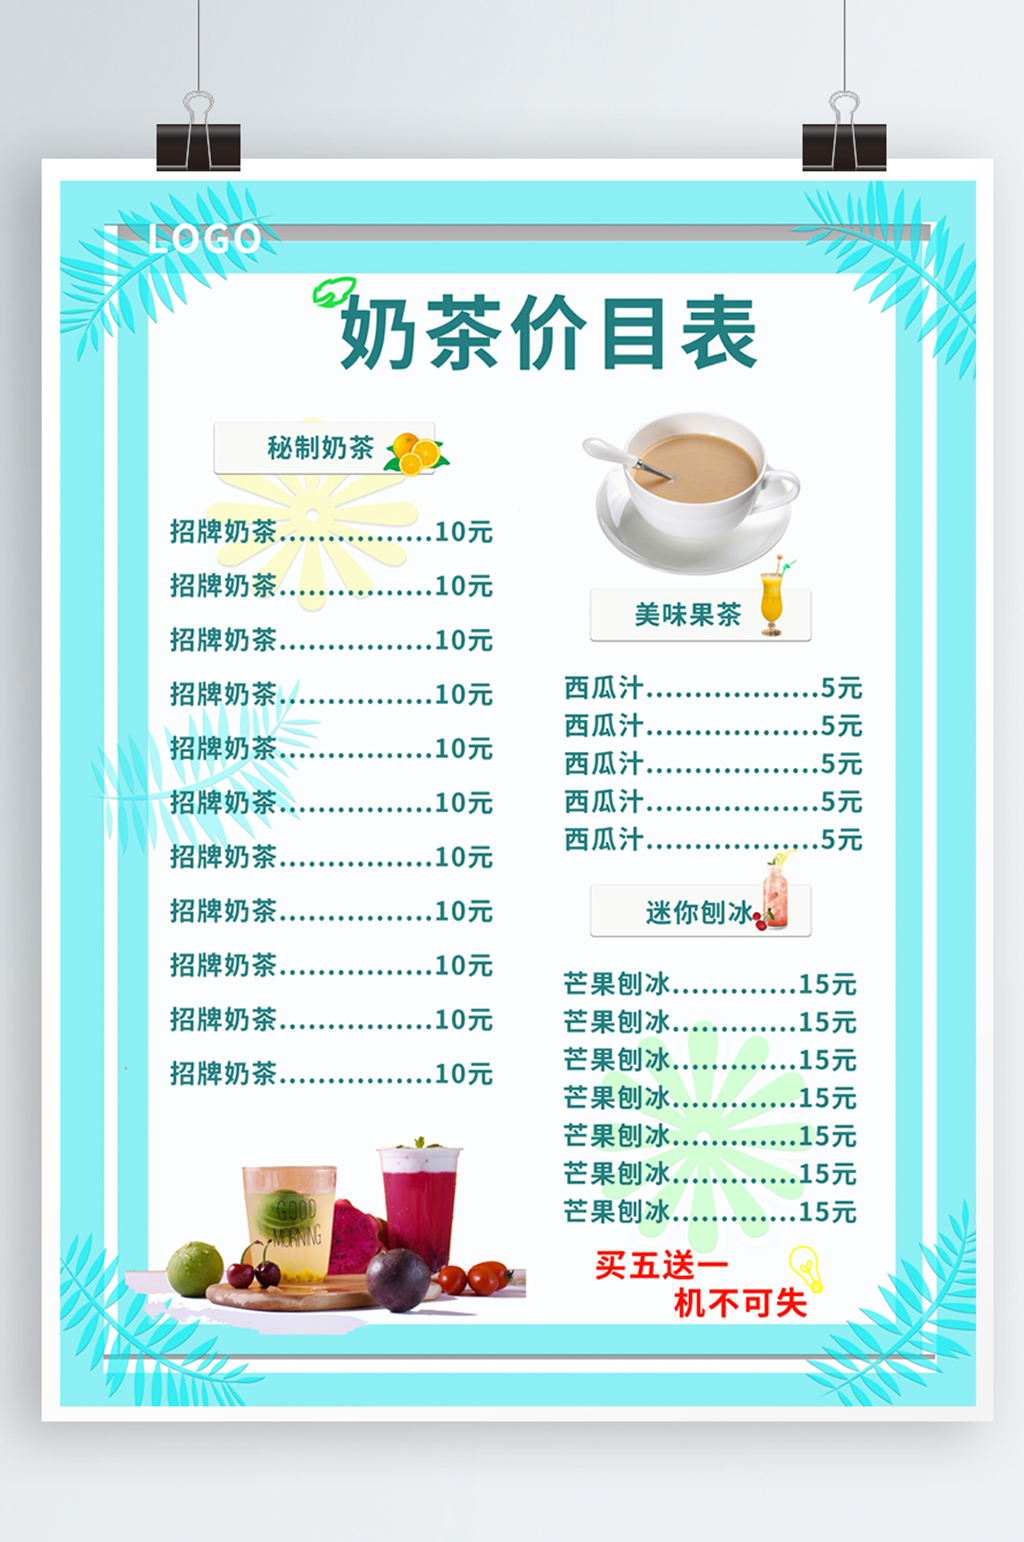 雅克雅思奶茶价目表图片